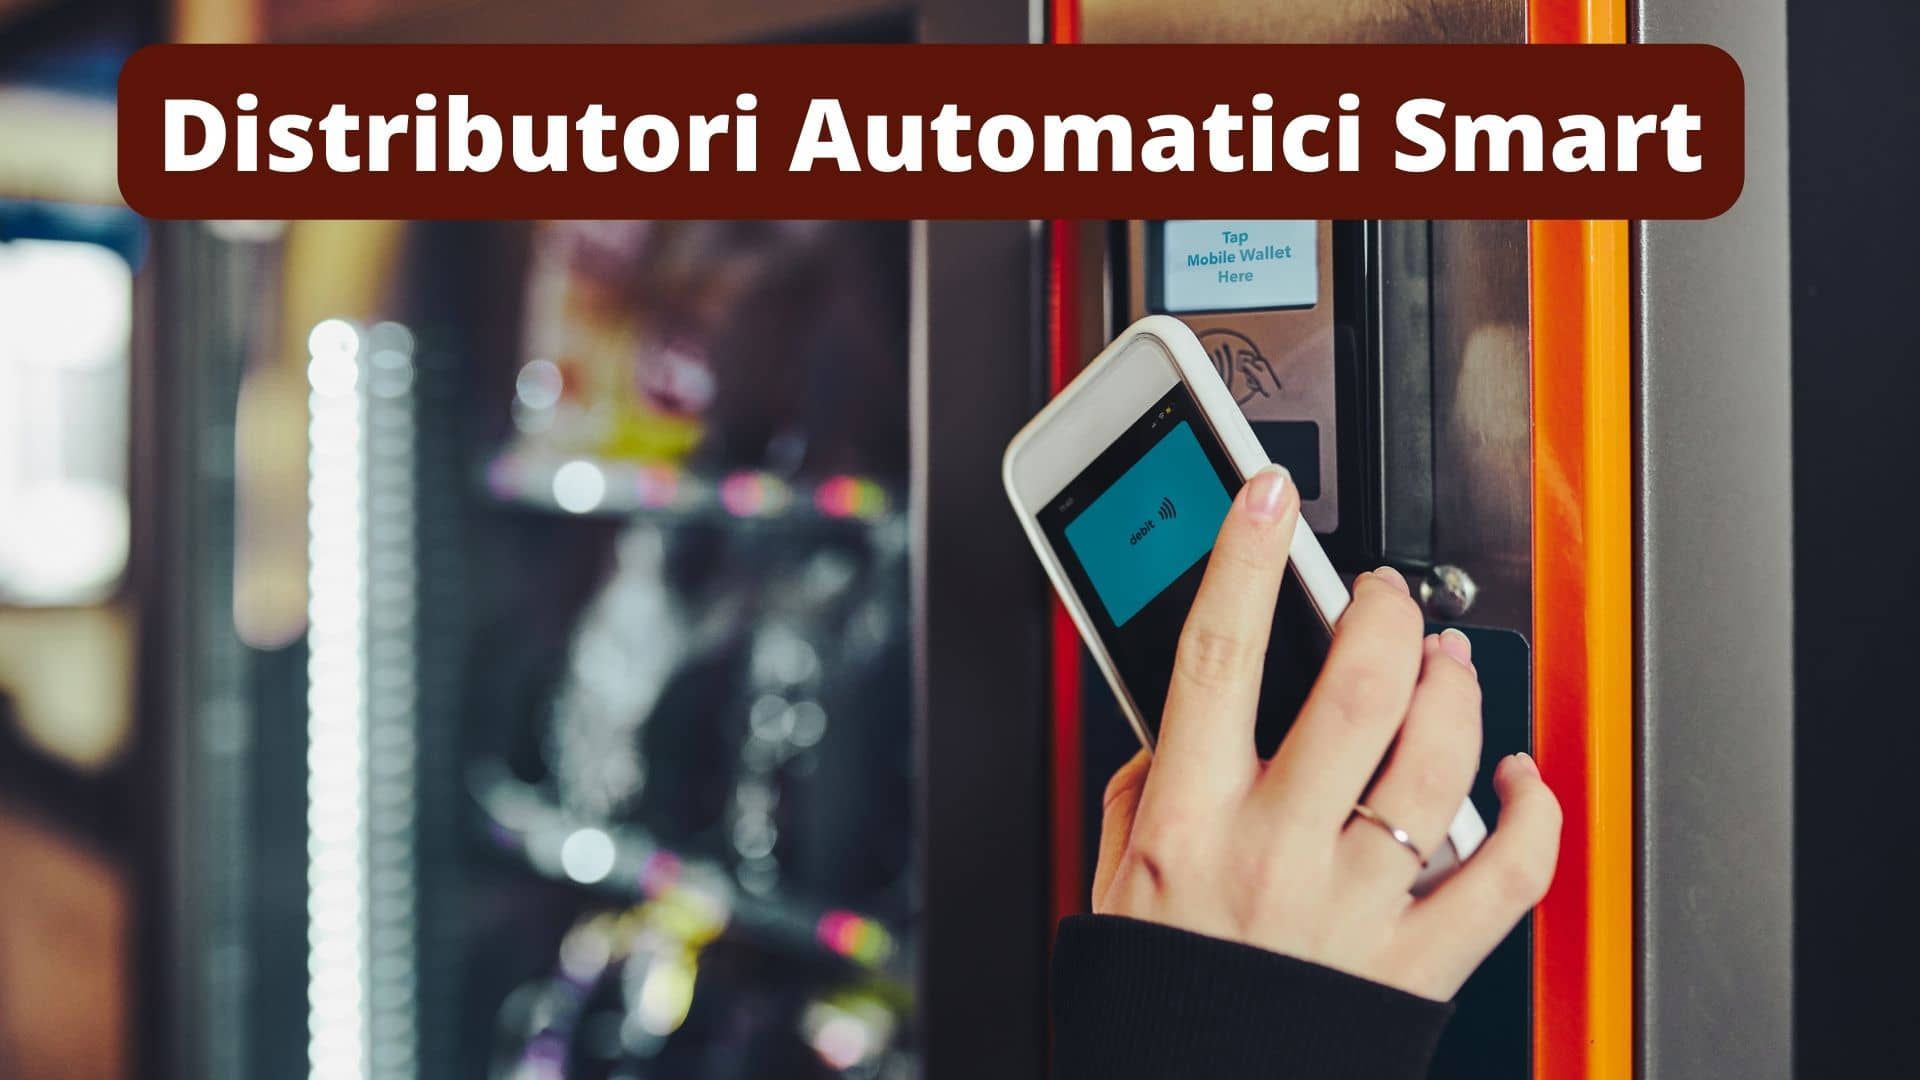 Distributori automatici smart: una guida con funzionalità, pagamenti, costi e comodato d’uso